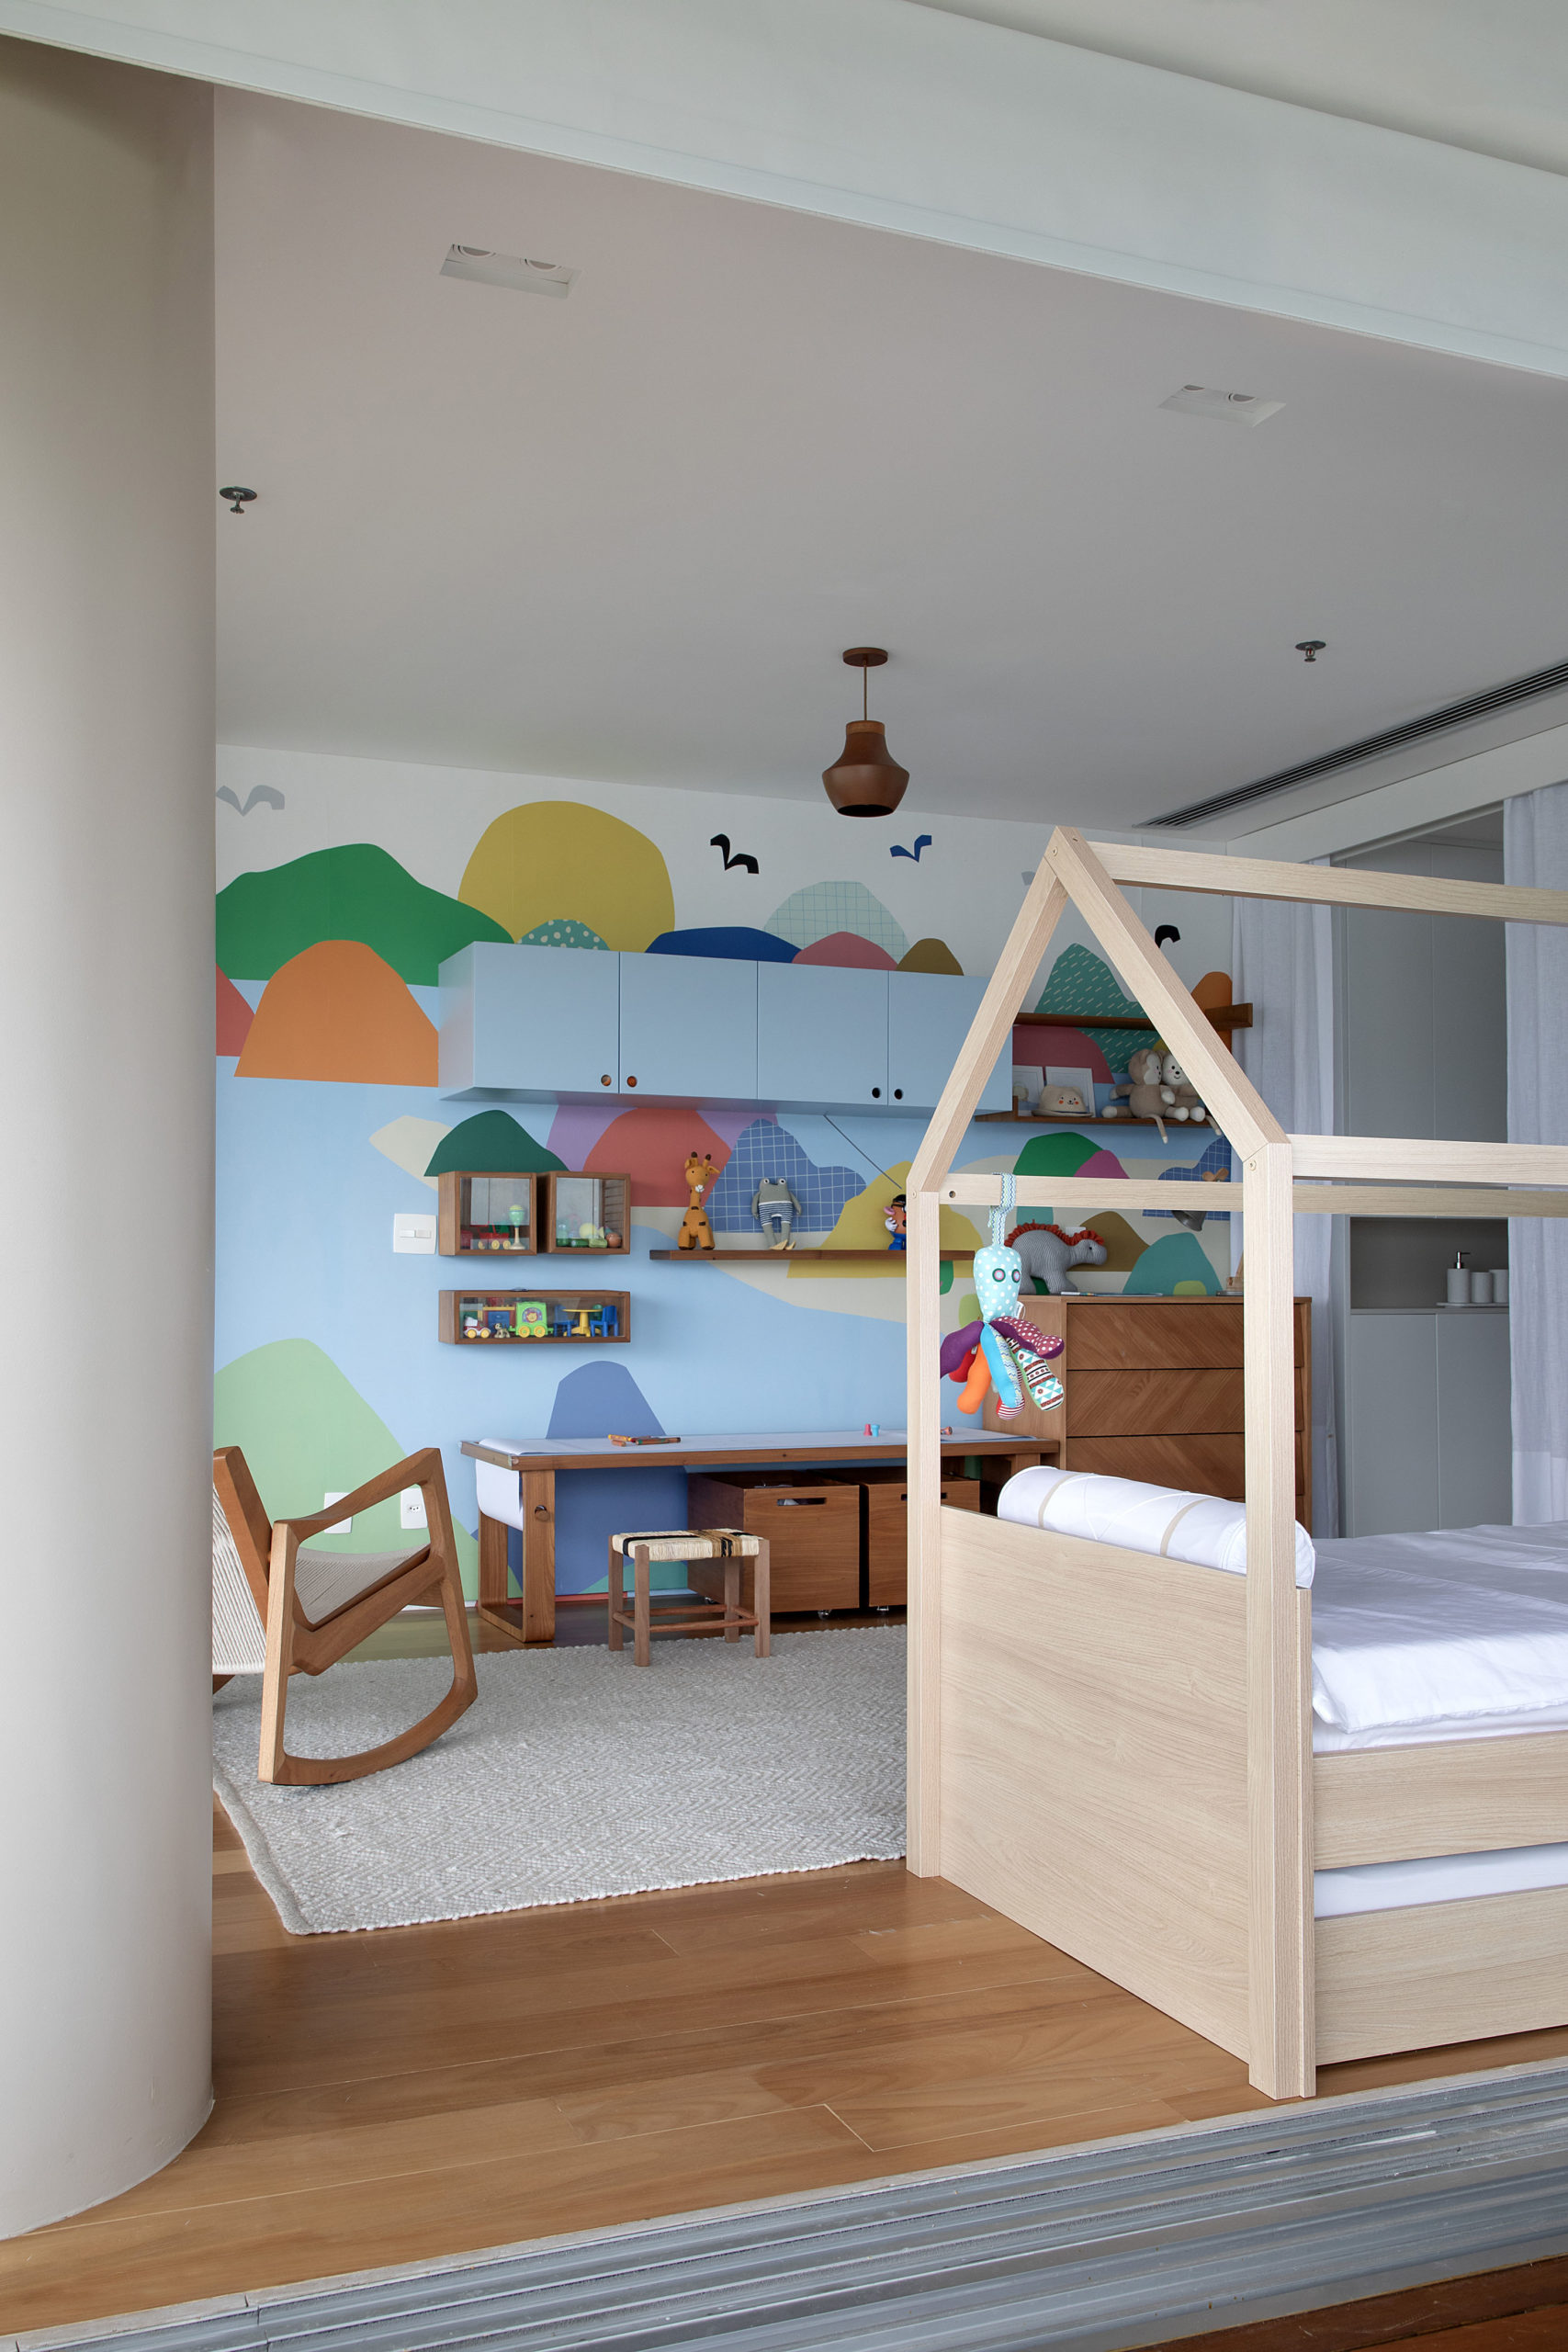 Quarto de criança decorado com pinturas coloridas na parede da bancada e cama montessoriana